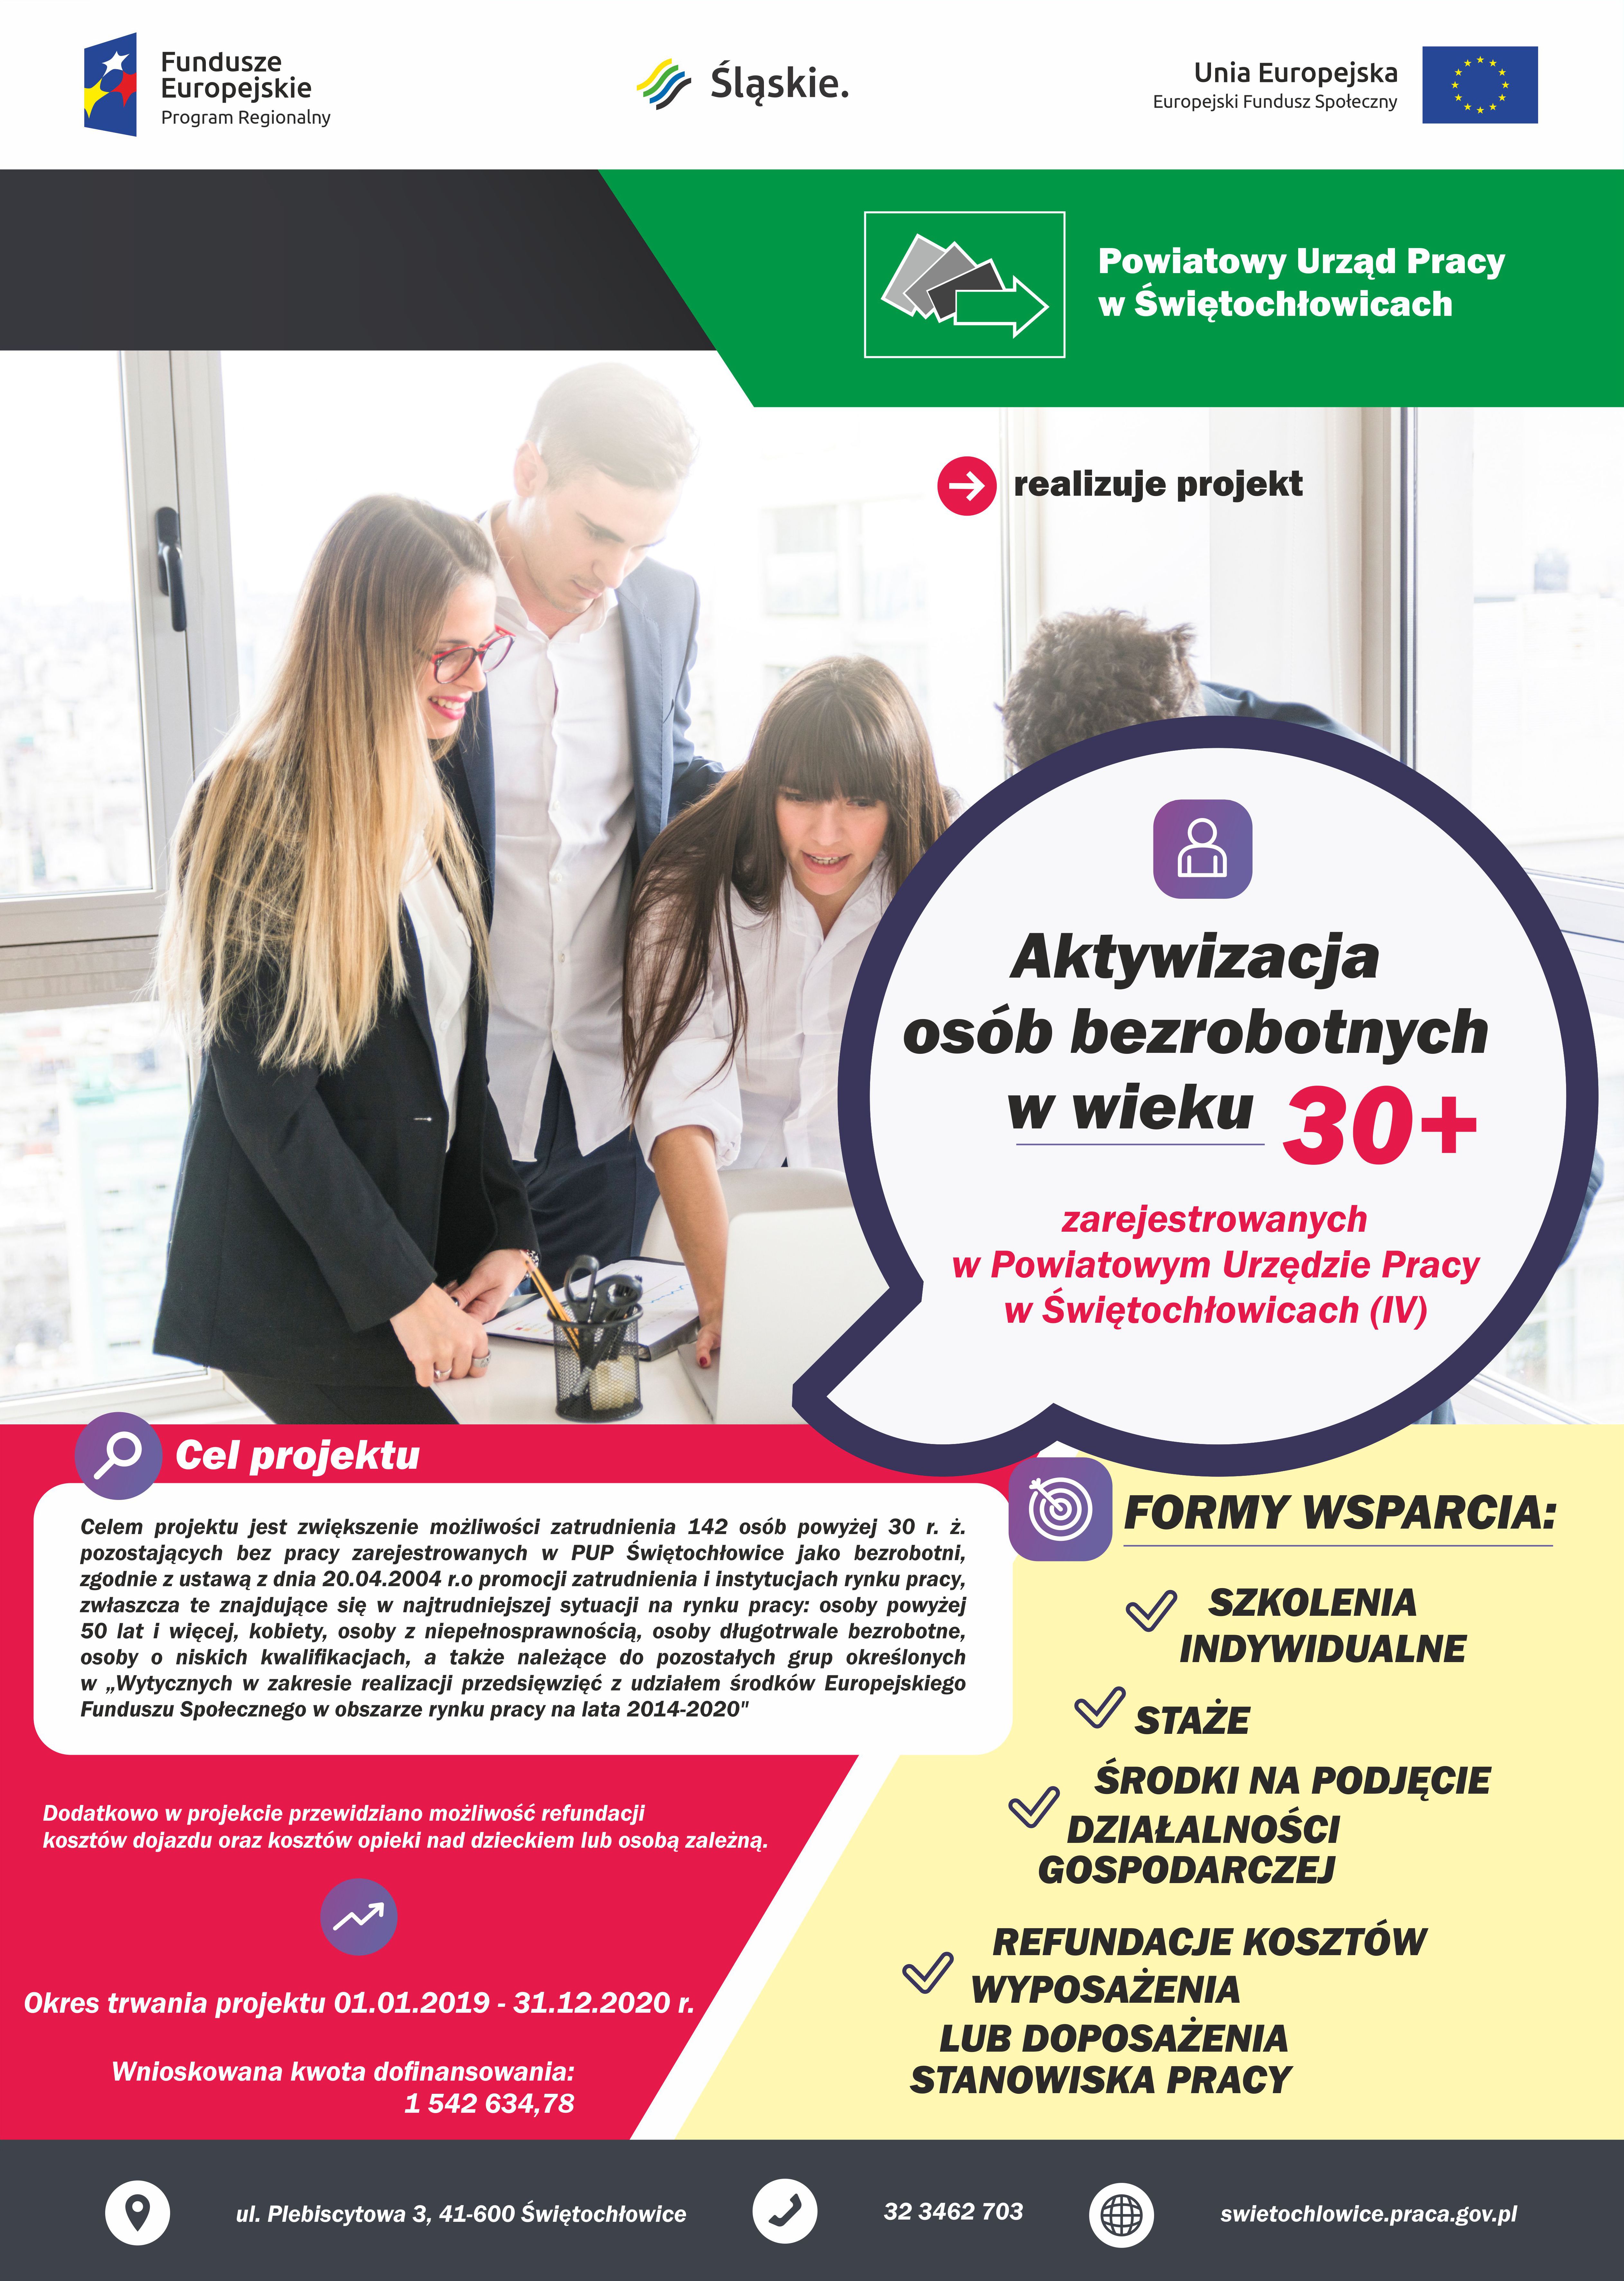 slider.alt.head Projekt „Aktywizacja osób bezrobotnych w wieku 30+ zarejestrowanych w Powiatowym Urzędzie Pracy w Świętochłowicach (IV)